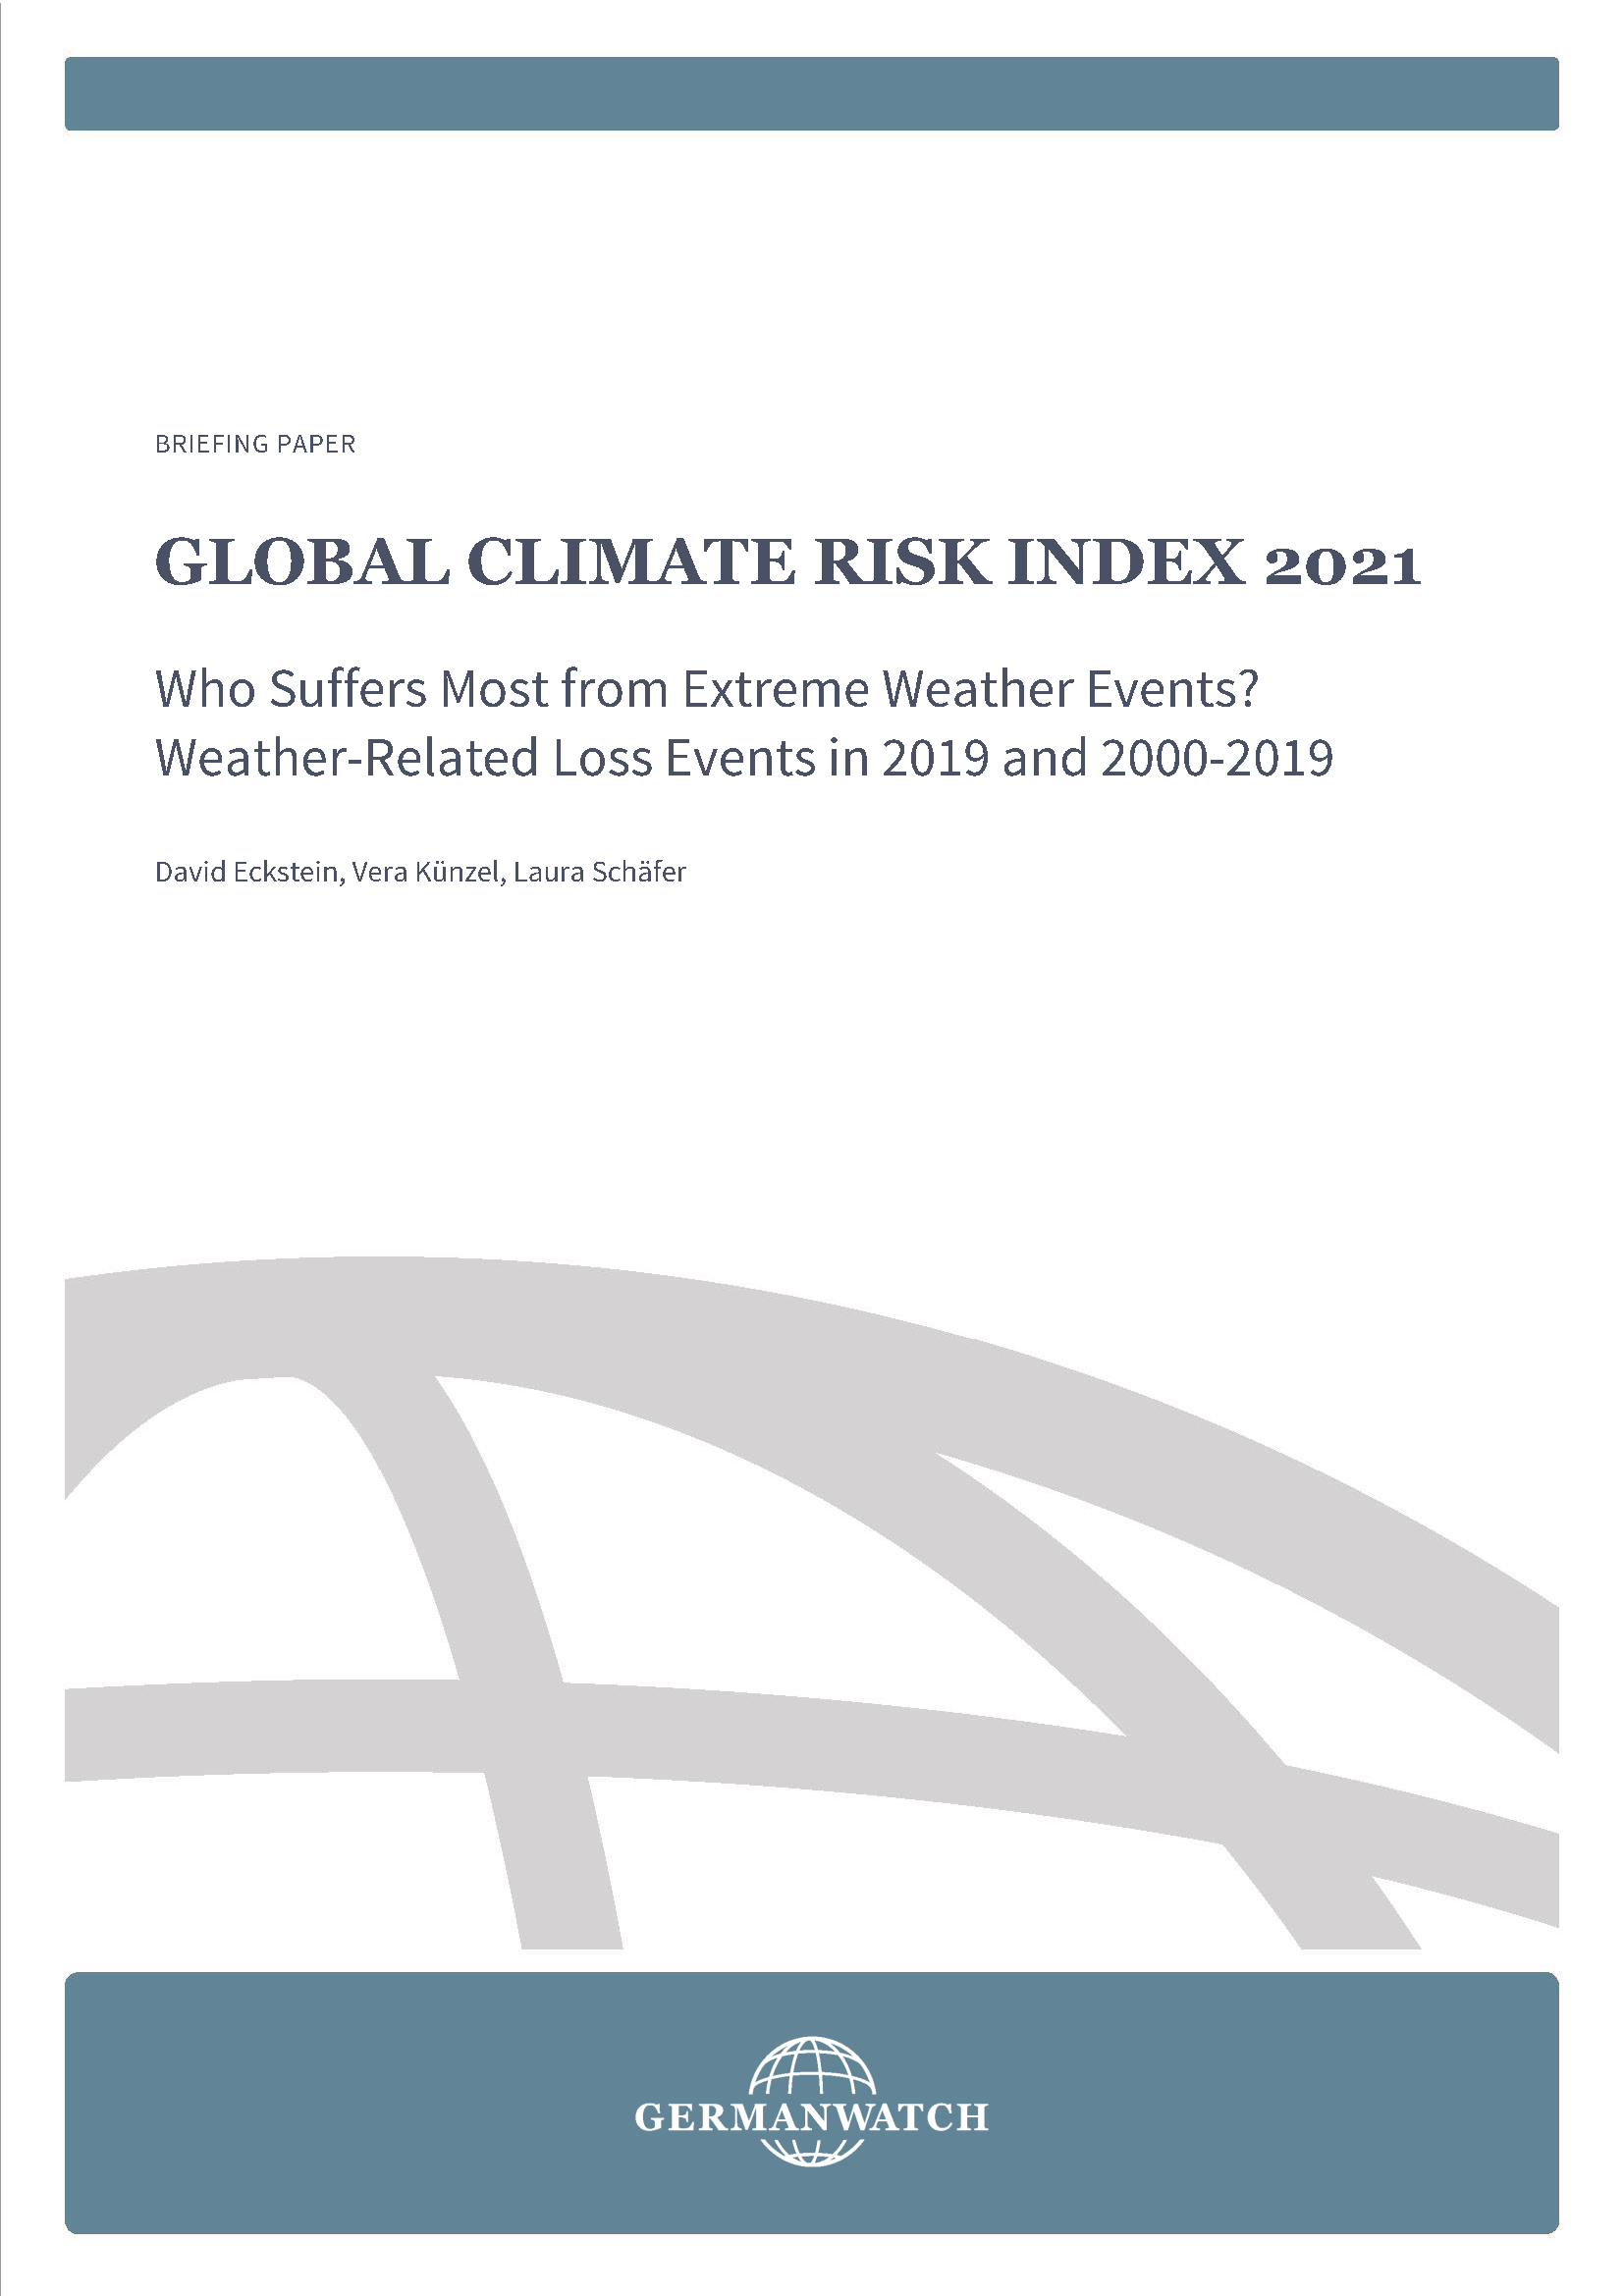 Page de couverture de l'indice mondial des risques climatiques 2021